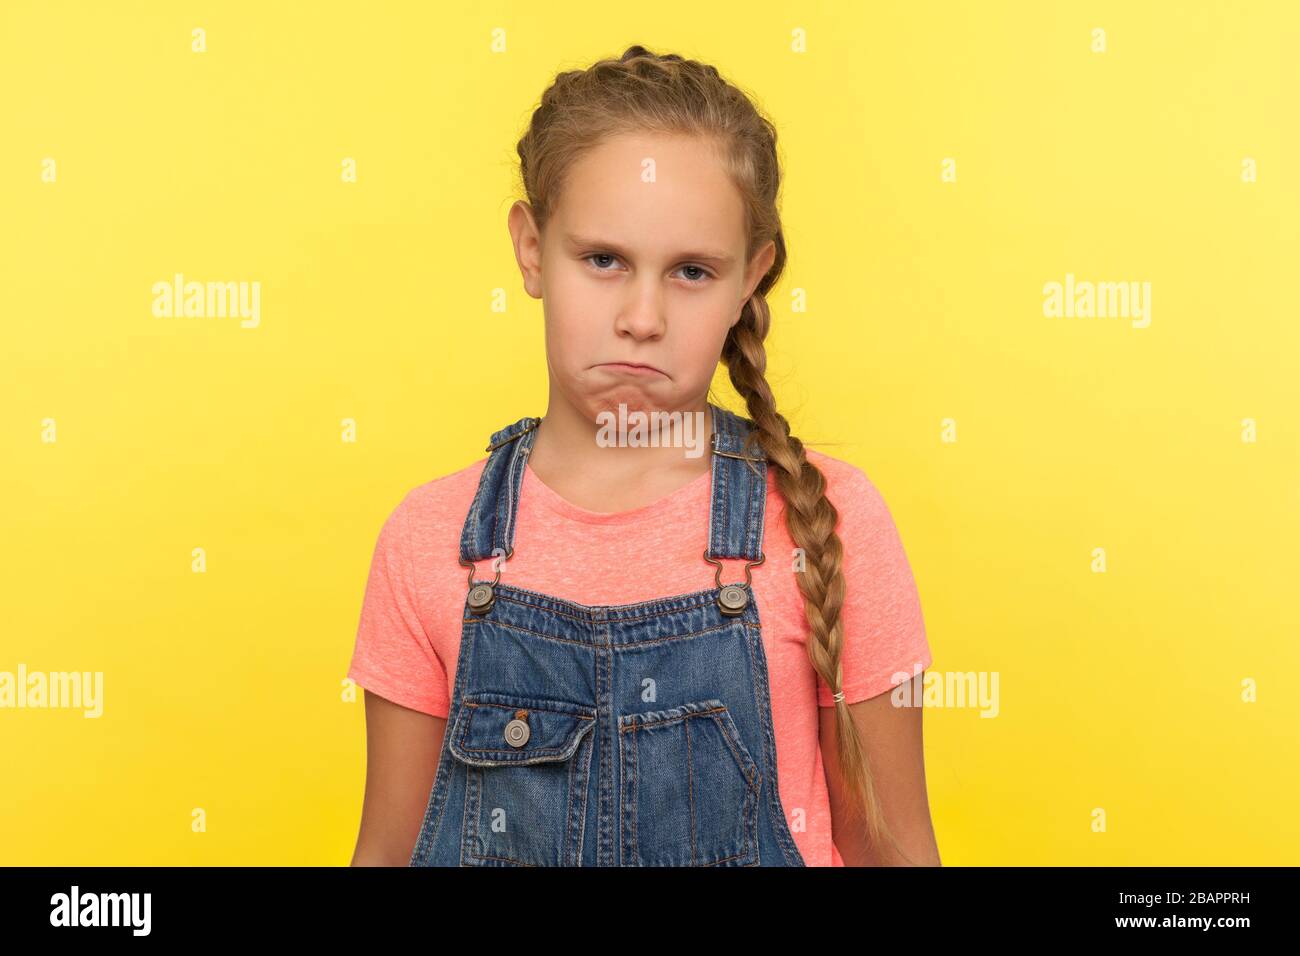 Portrait d'une petite fille mécontente et drôle et frustrée, avec une tresse dans des salopettes en denim, regardant un appareil photo avec une expression de visage mécontent et comique. Intérieur Banque D'Images